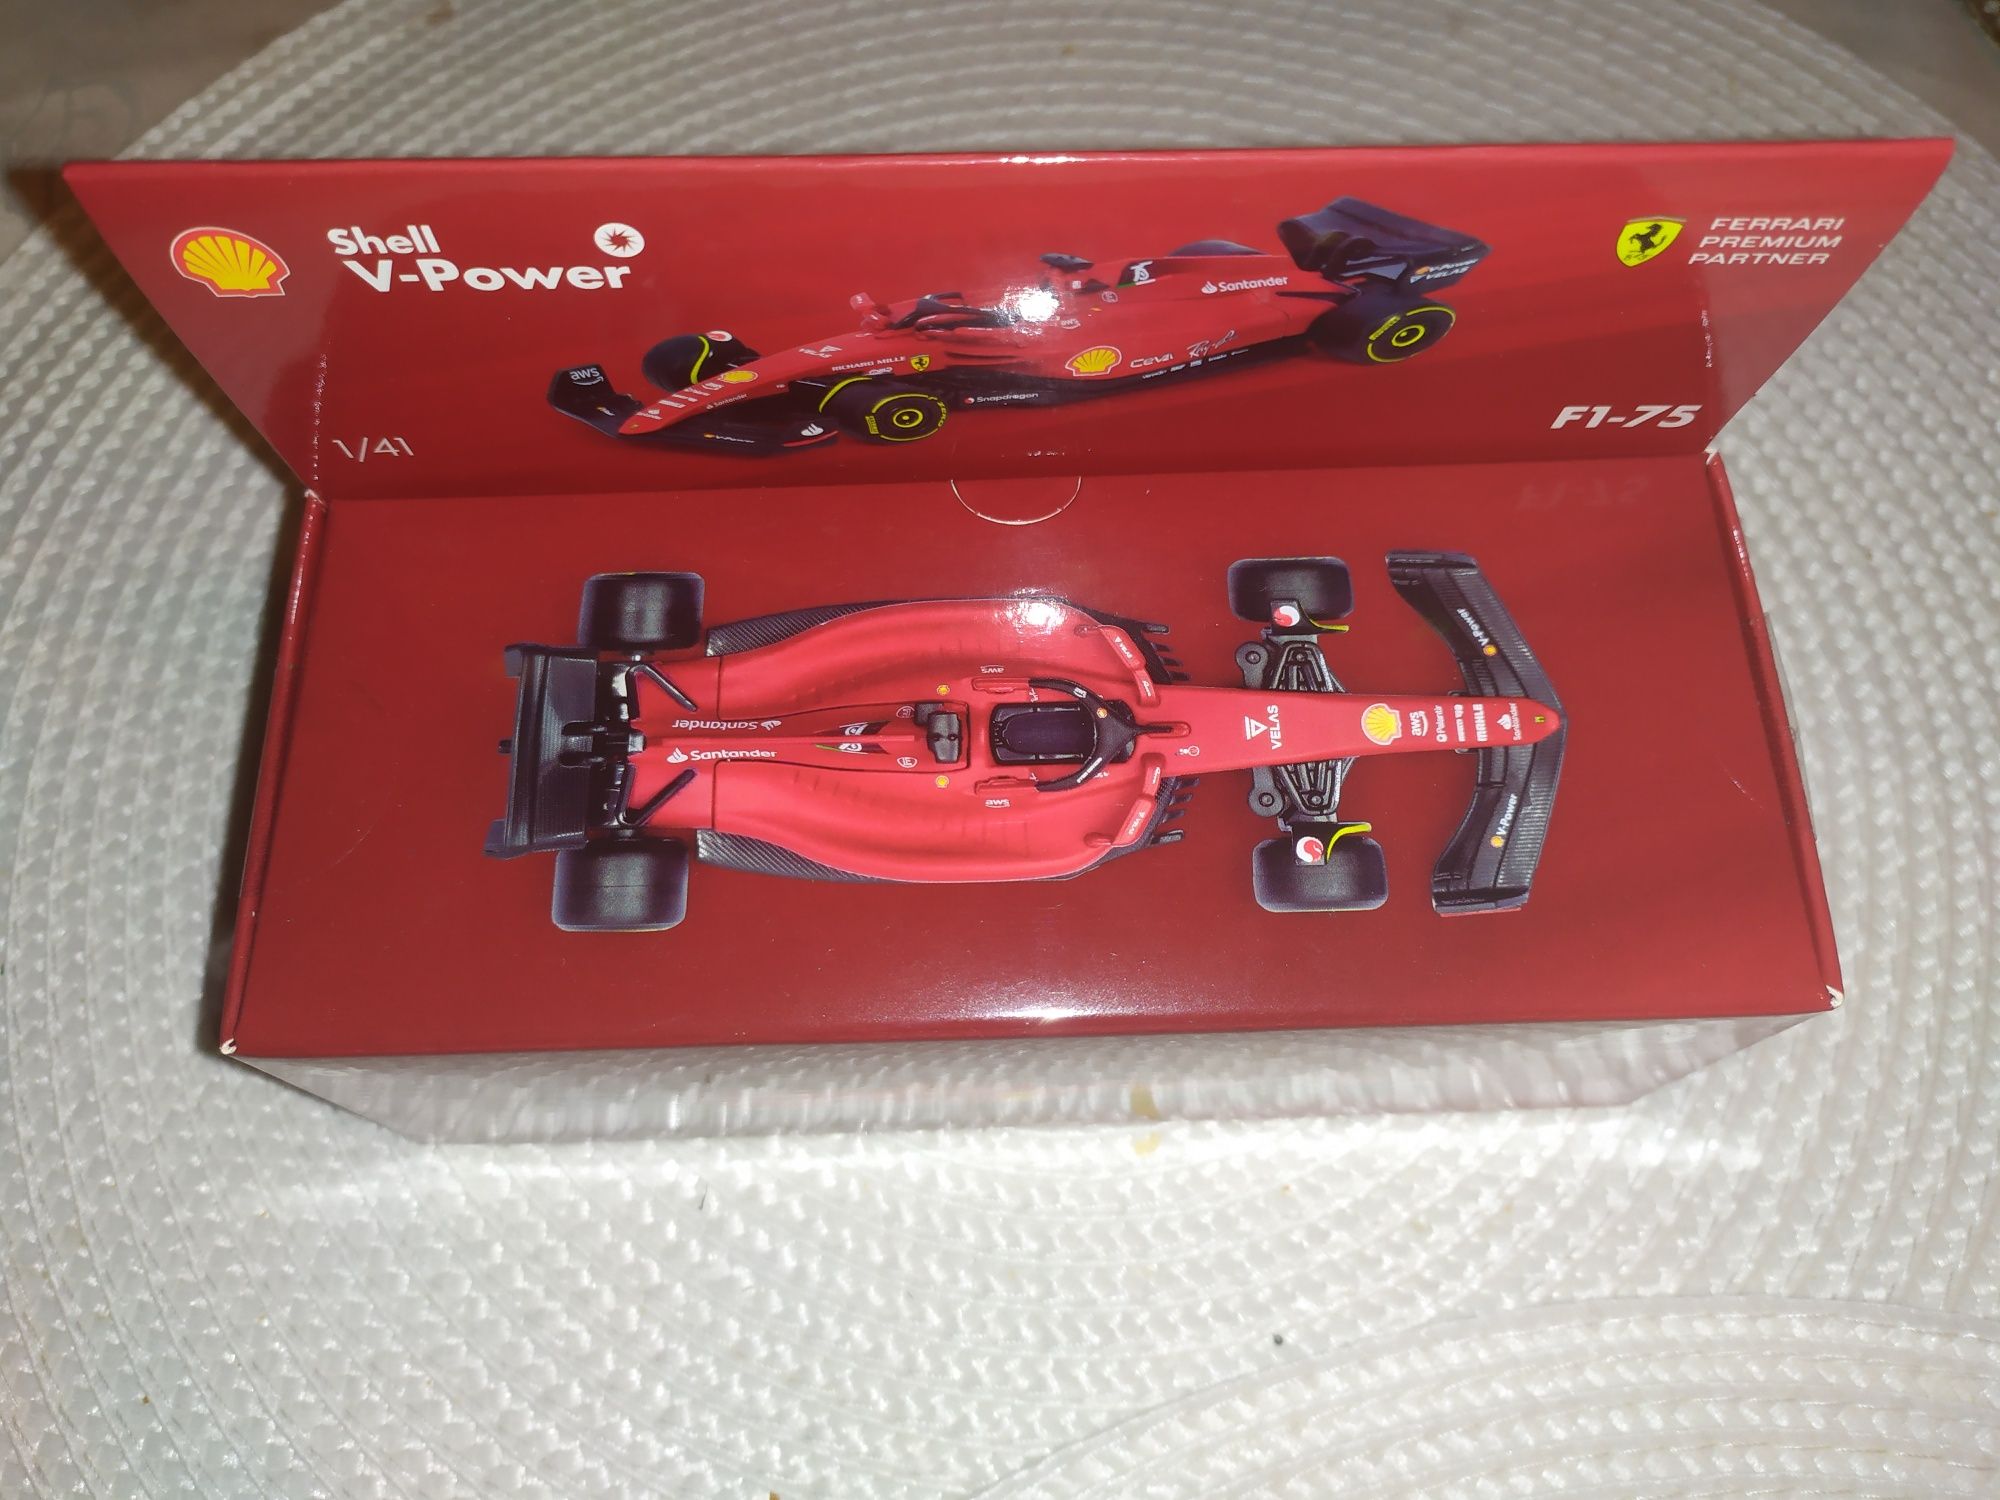 Auto Shell Ferrari F1-75 nowe